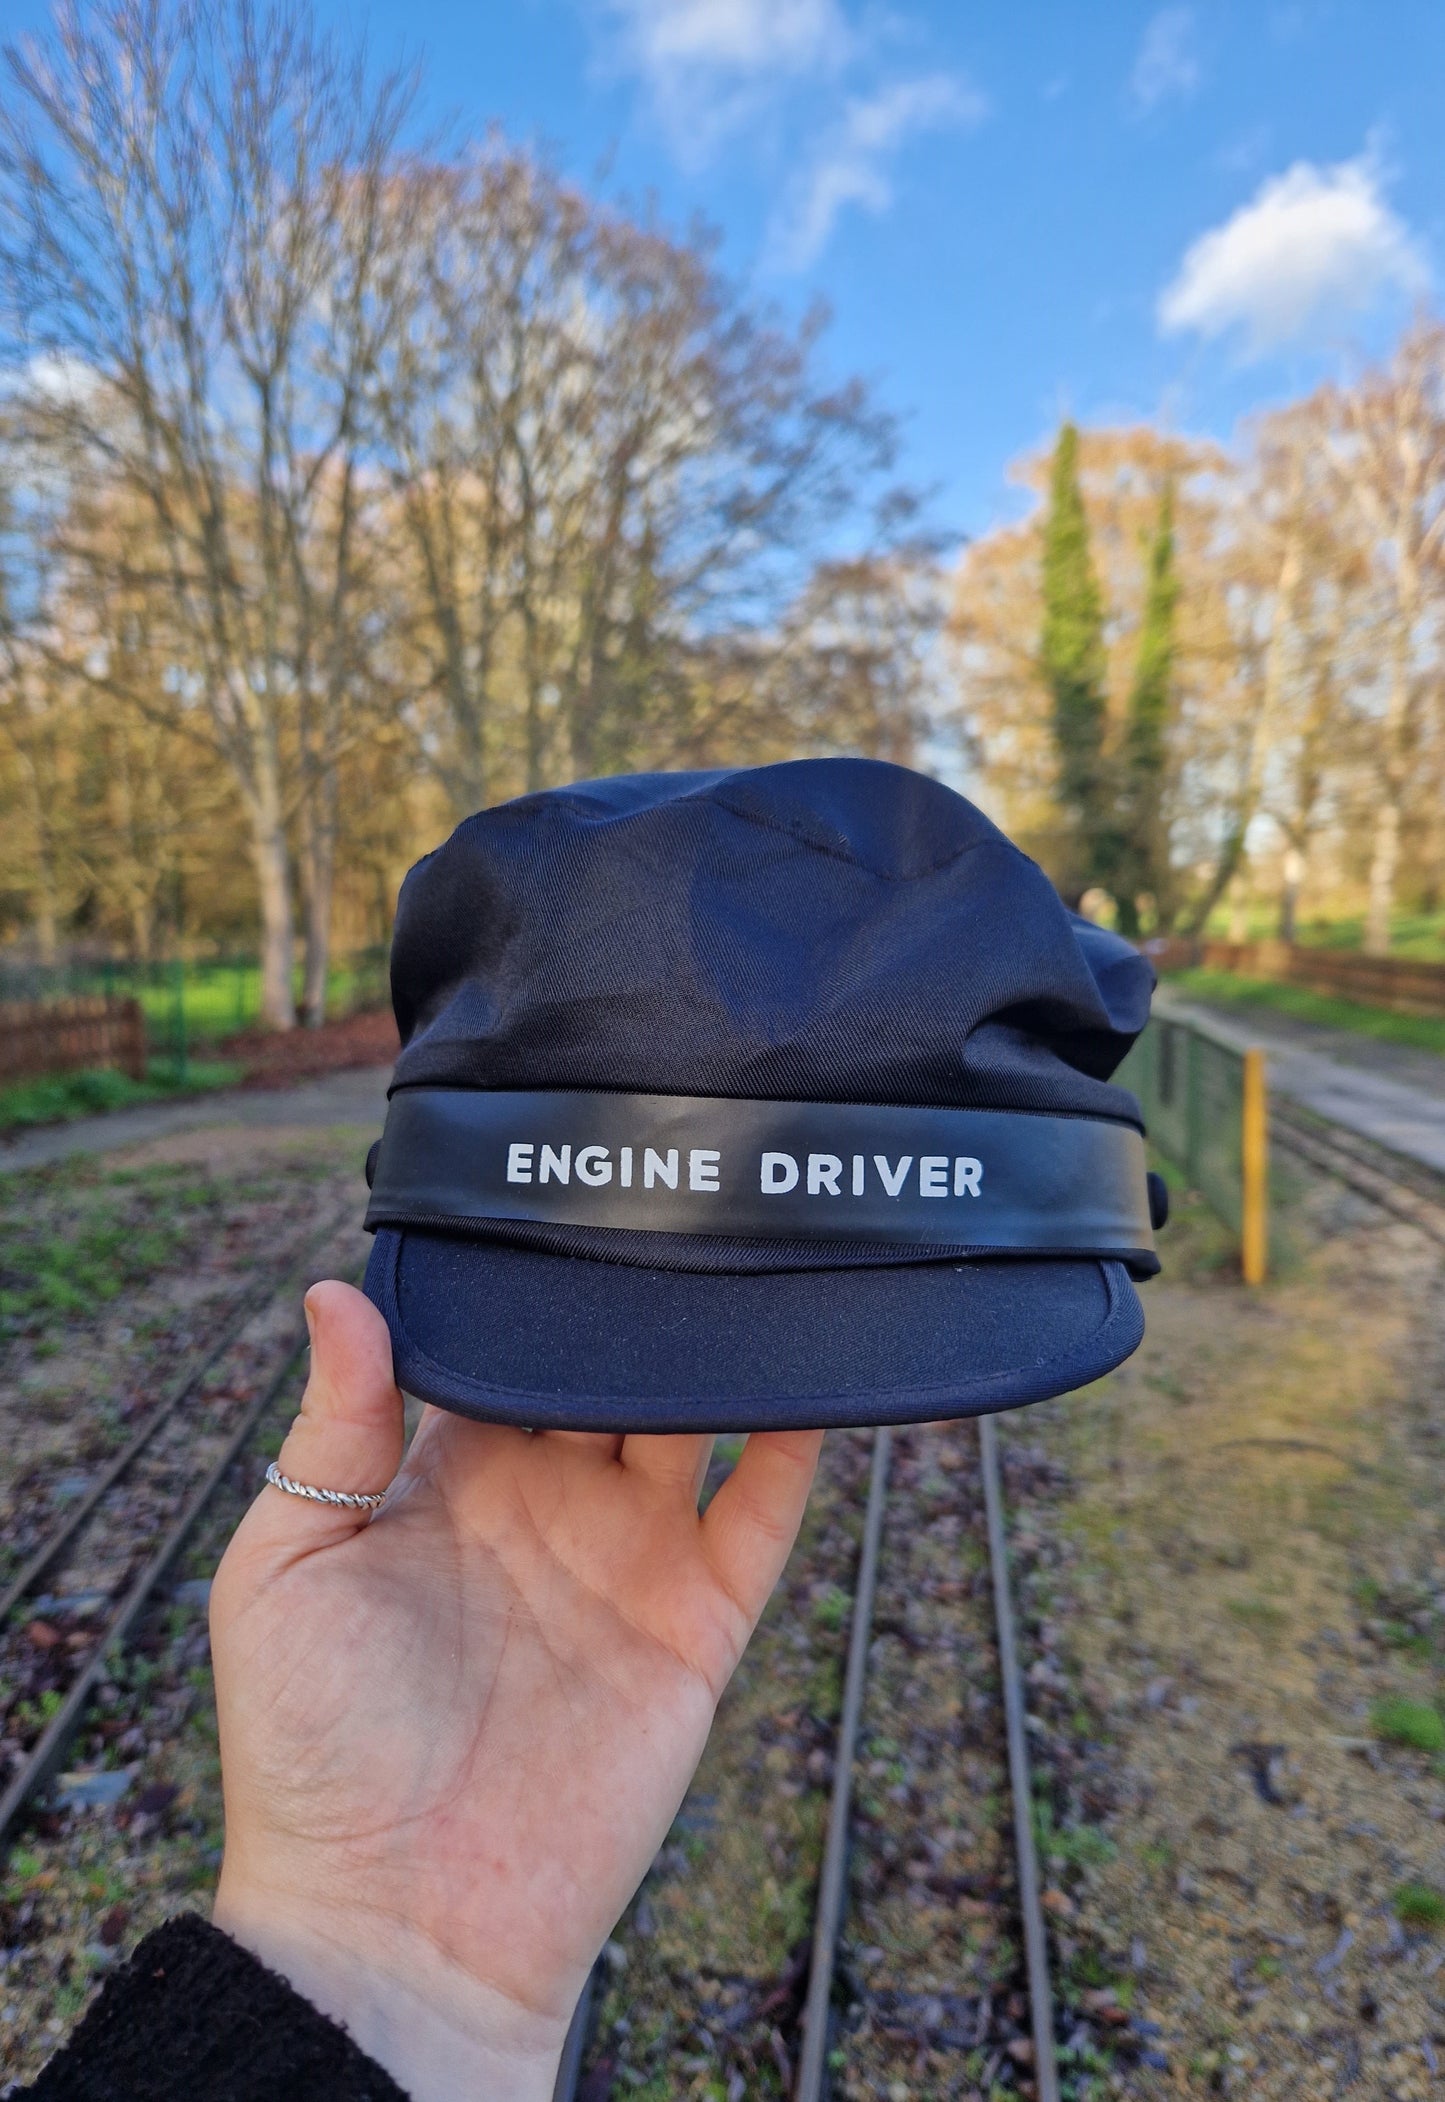 Children's Engine Driver Hat